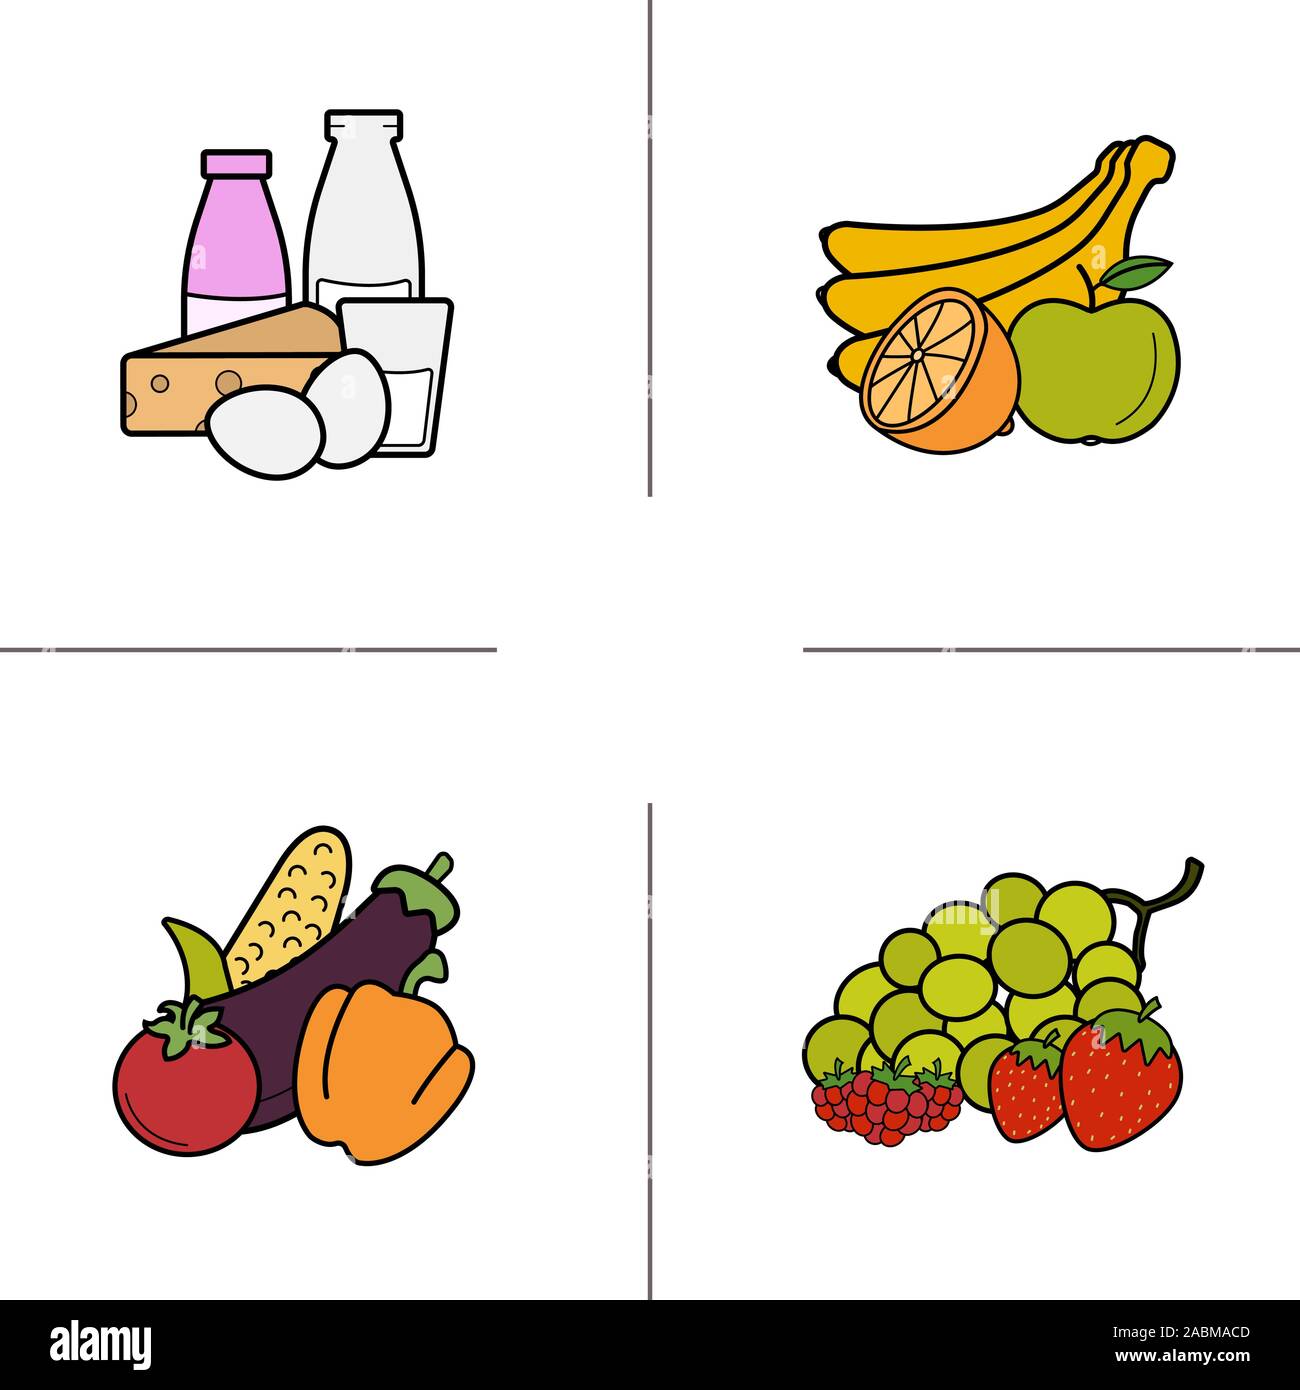 Lebensmittelgeschäft Produkte Kategorien farbige Symbole gesetzt. Obst, Gemüse, Beeren, Milchprodukte. Isolierte Vektorgrafiken Stock Vektor